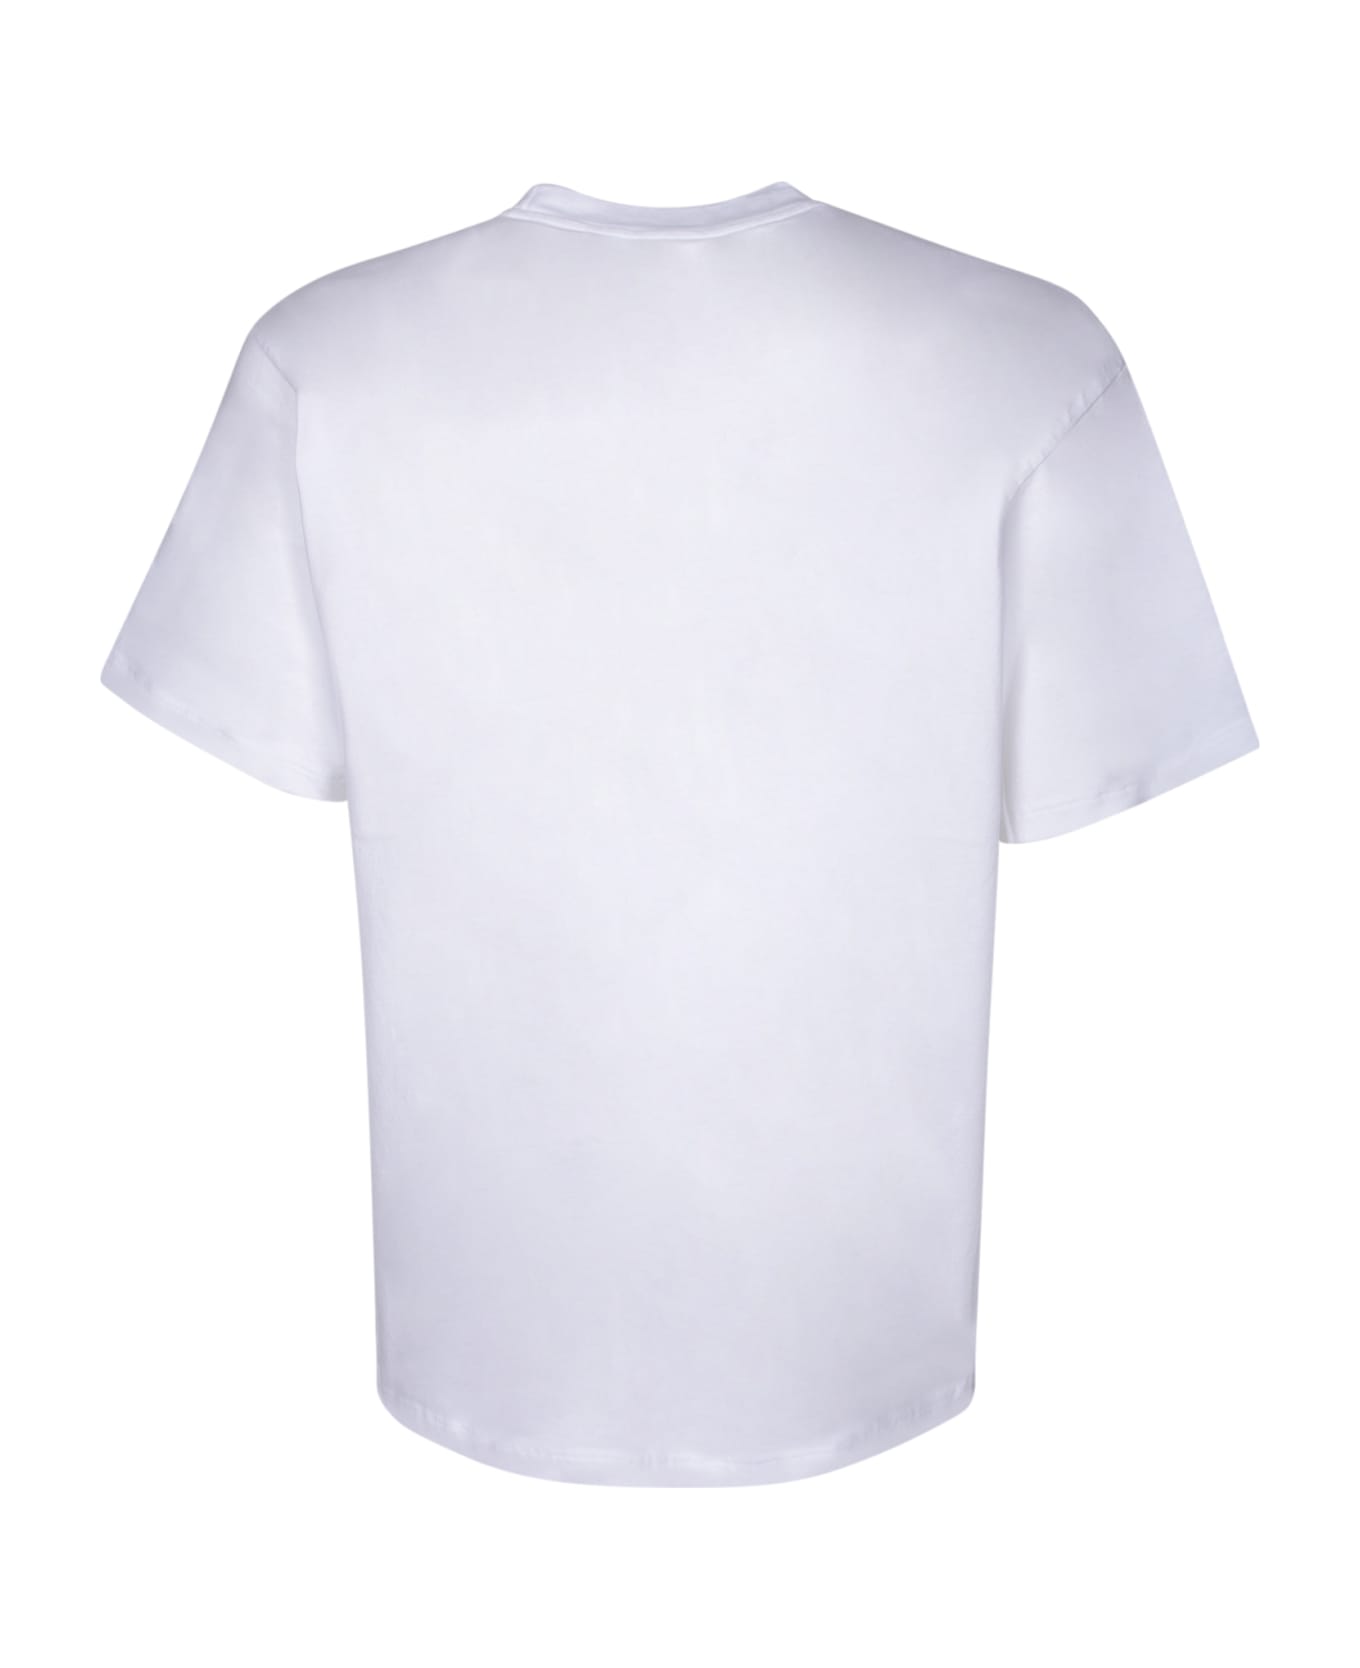 Aries No Problemo T-shirt - White シャツ